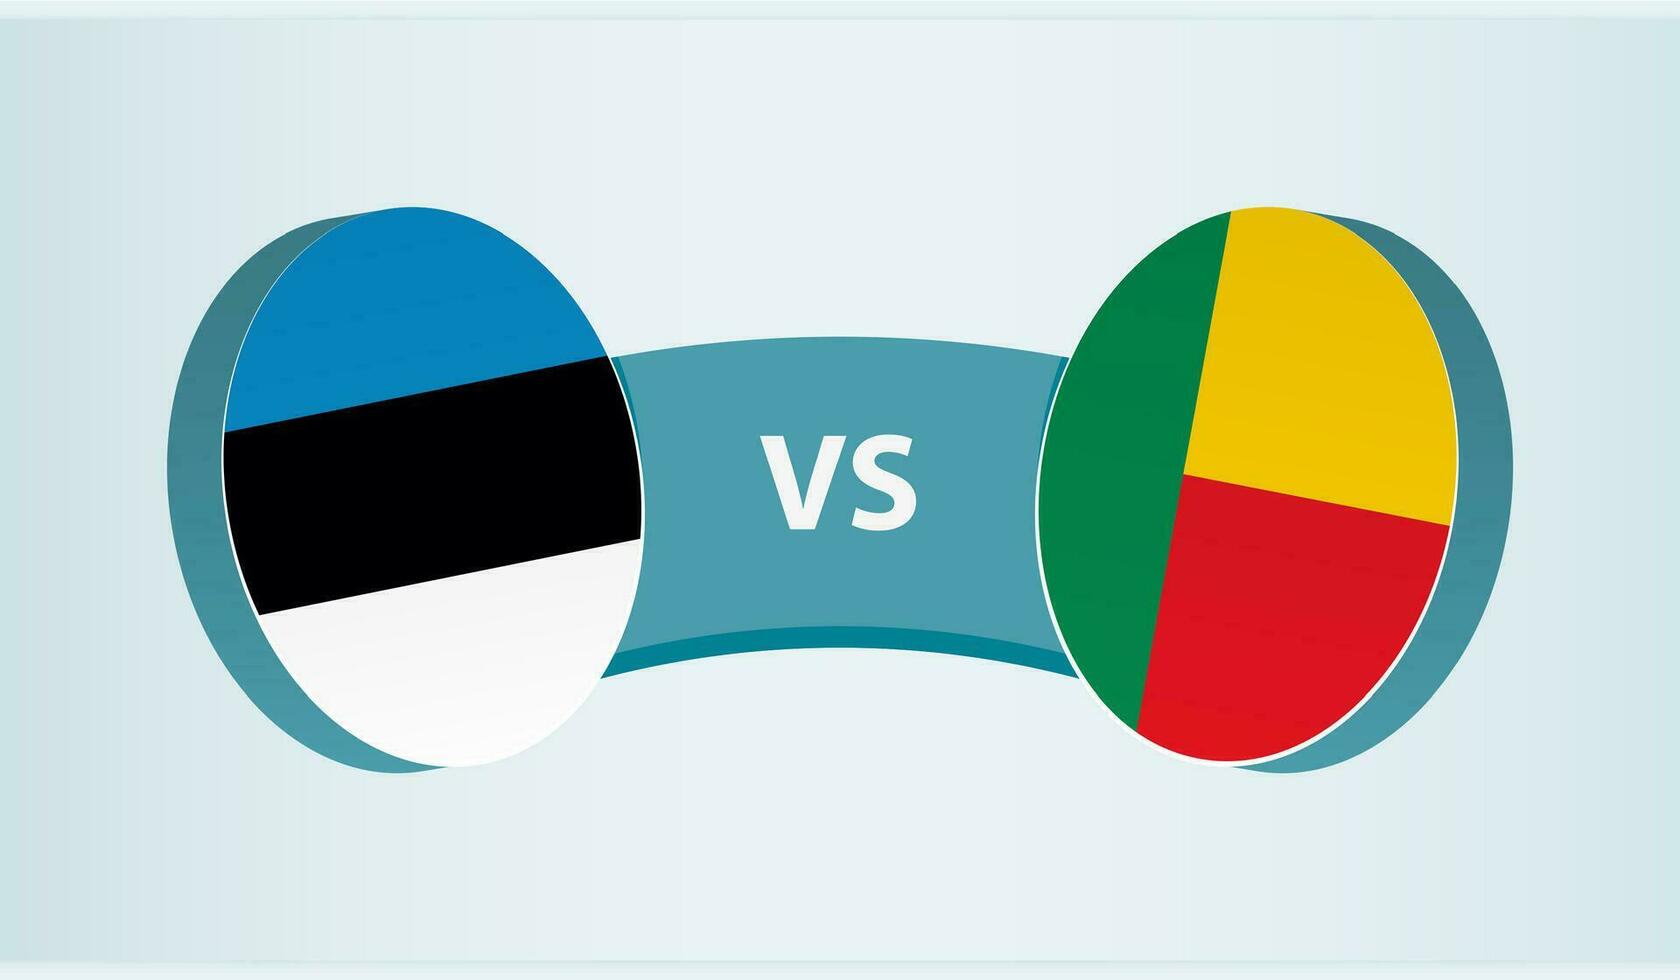 Estonia versus Benin, team sports competition concept. vector